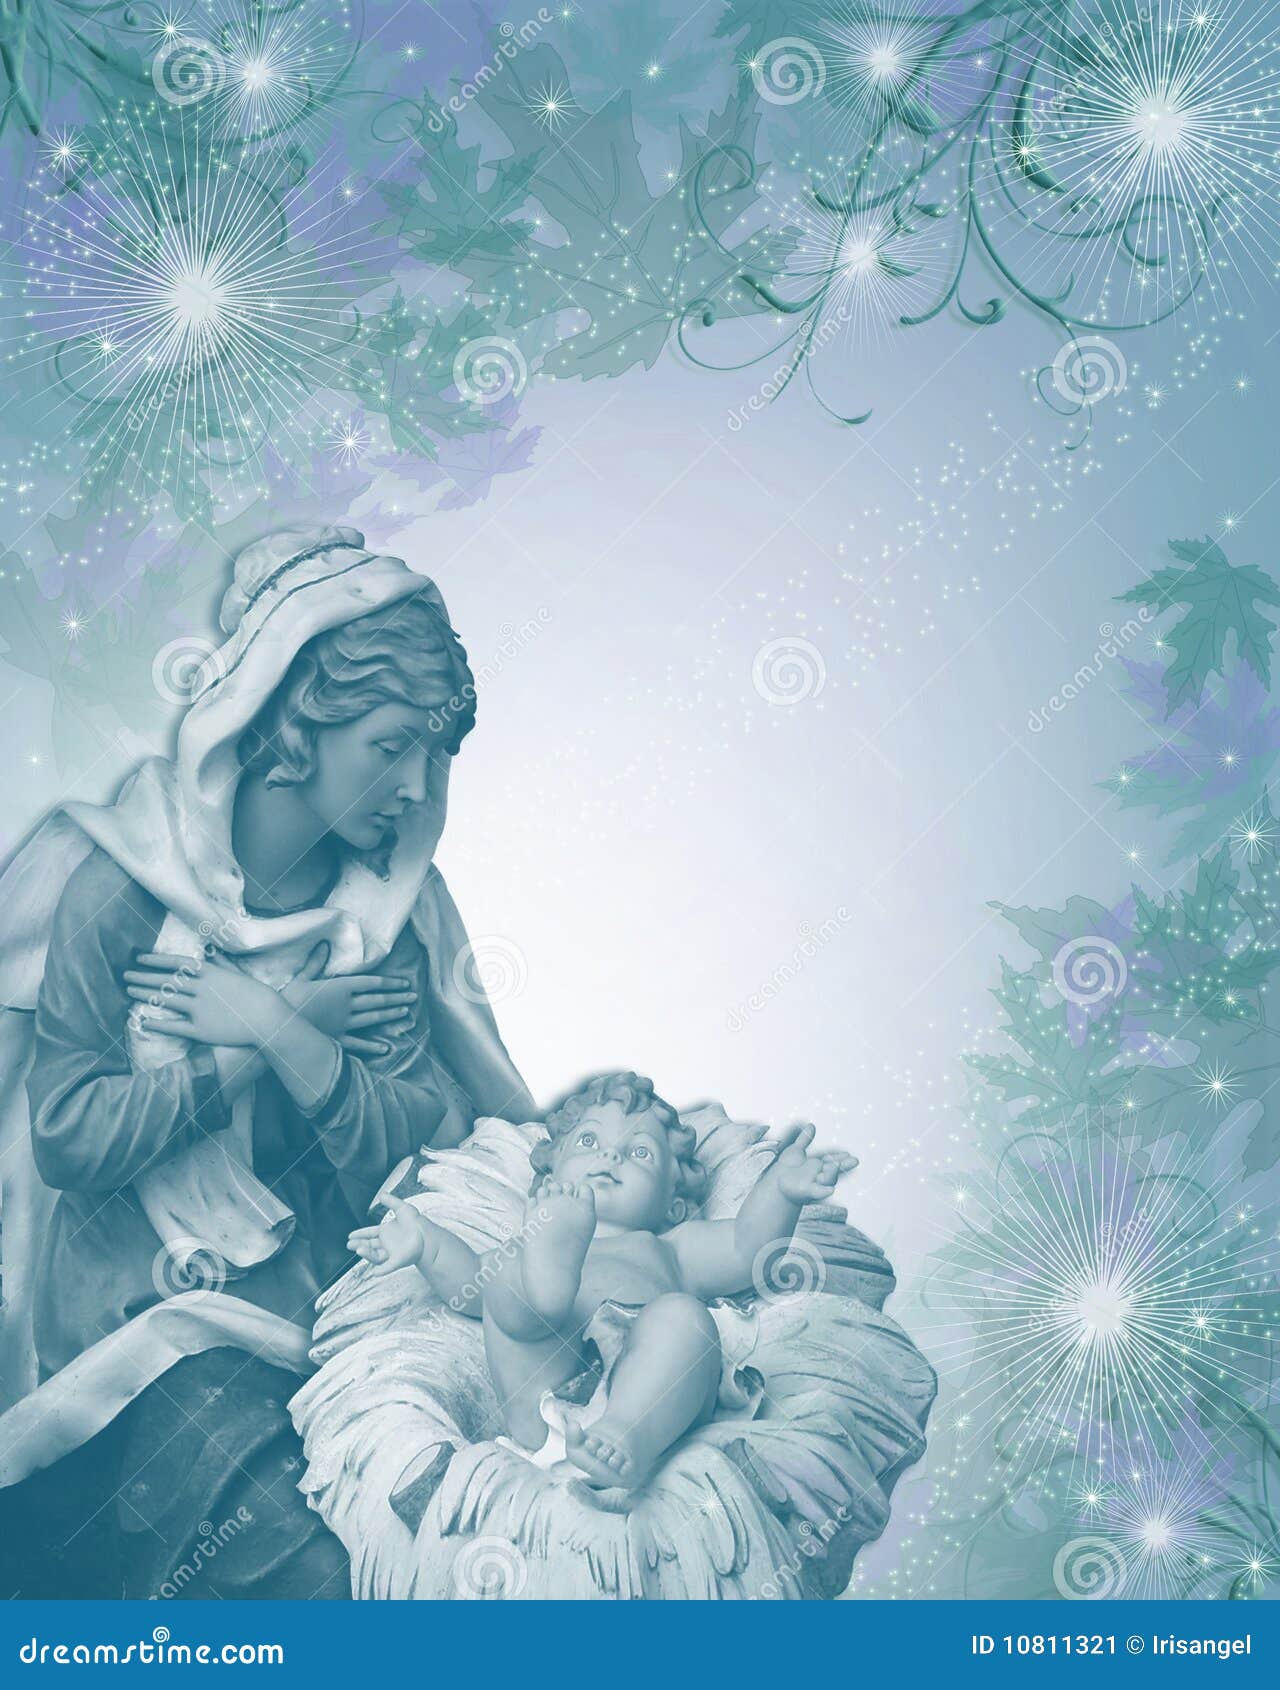 Immagini Natale Religioso.Azzurro Religioso Della Cartolina Di Natale Di Nativita Illustrazione Di Stock Illustrazione Di Bambino Elegante 10811321